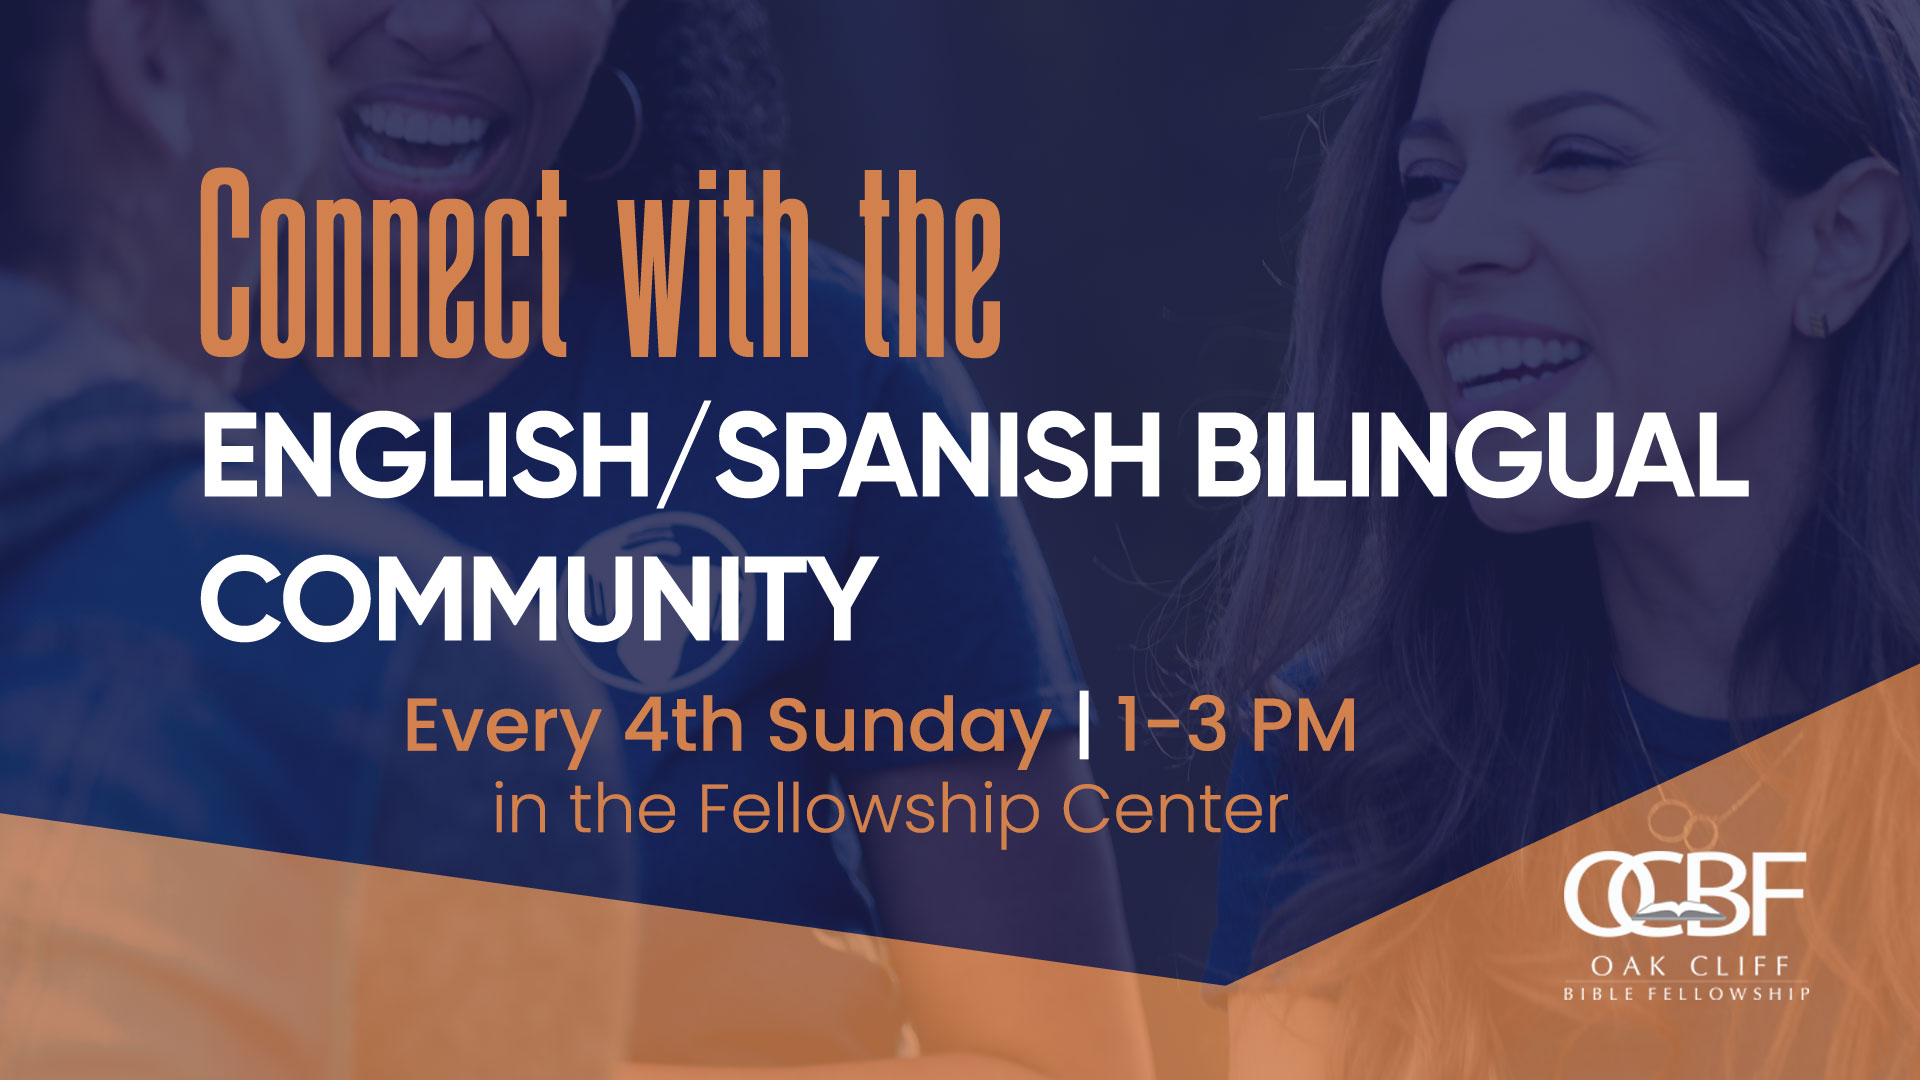 English Spanish bilingual community gathering each fourth Sunday at OCBF